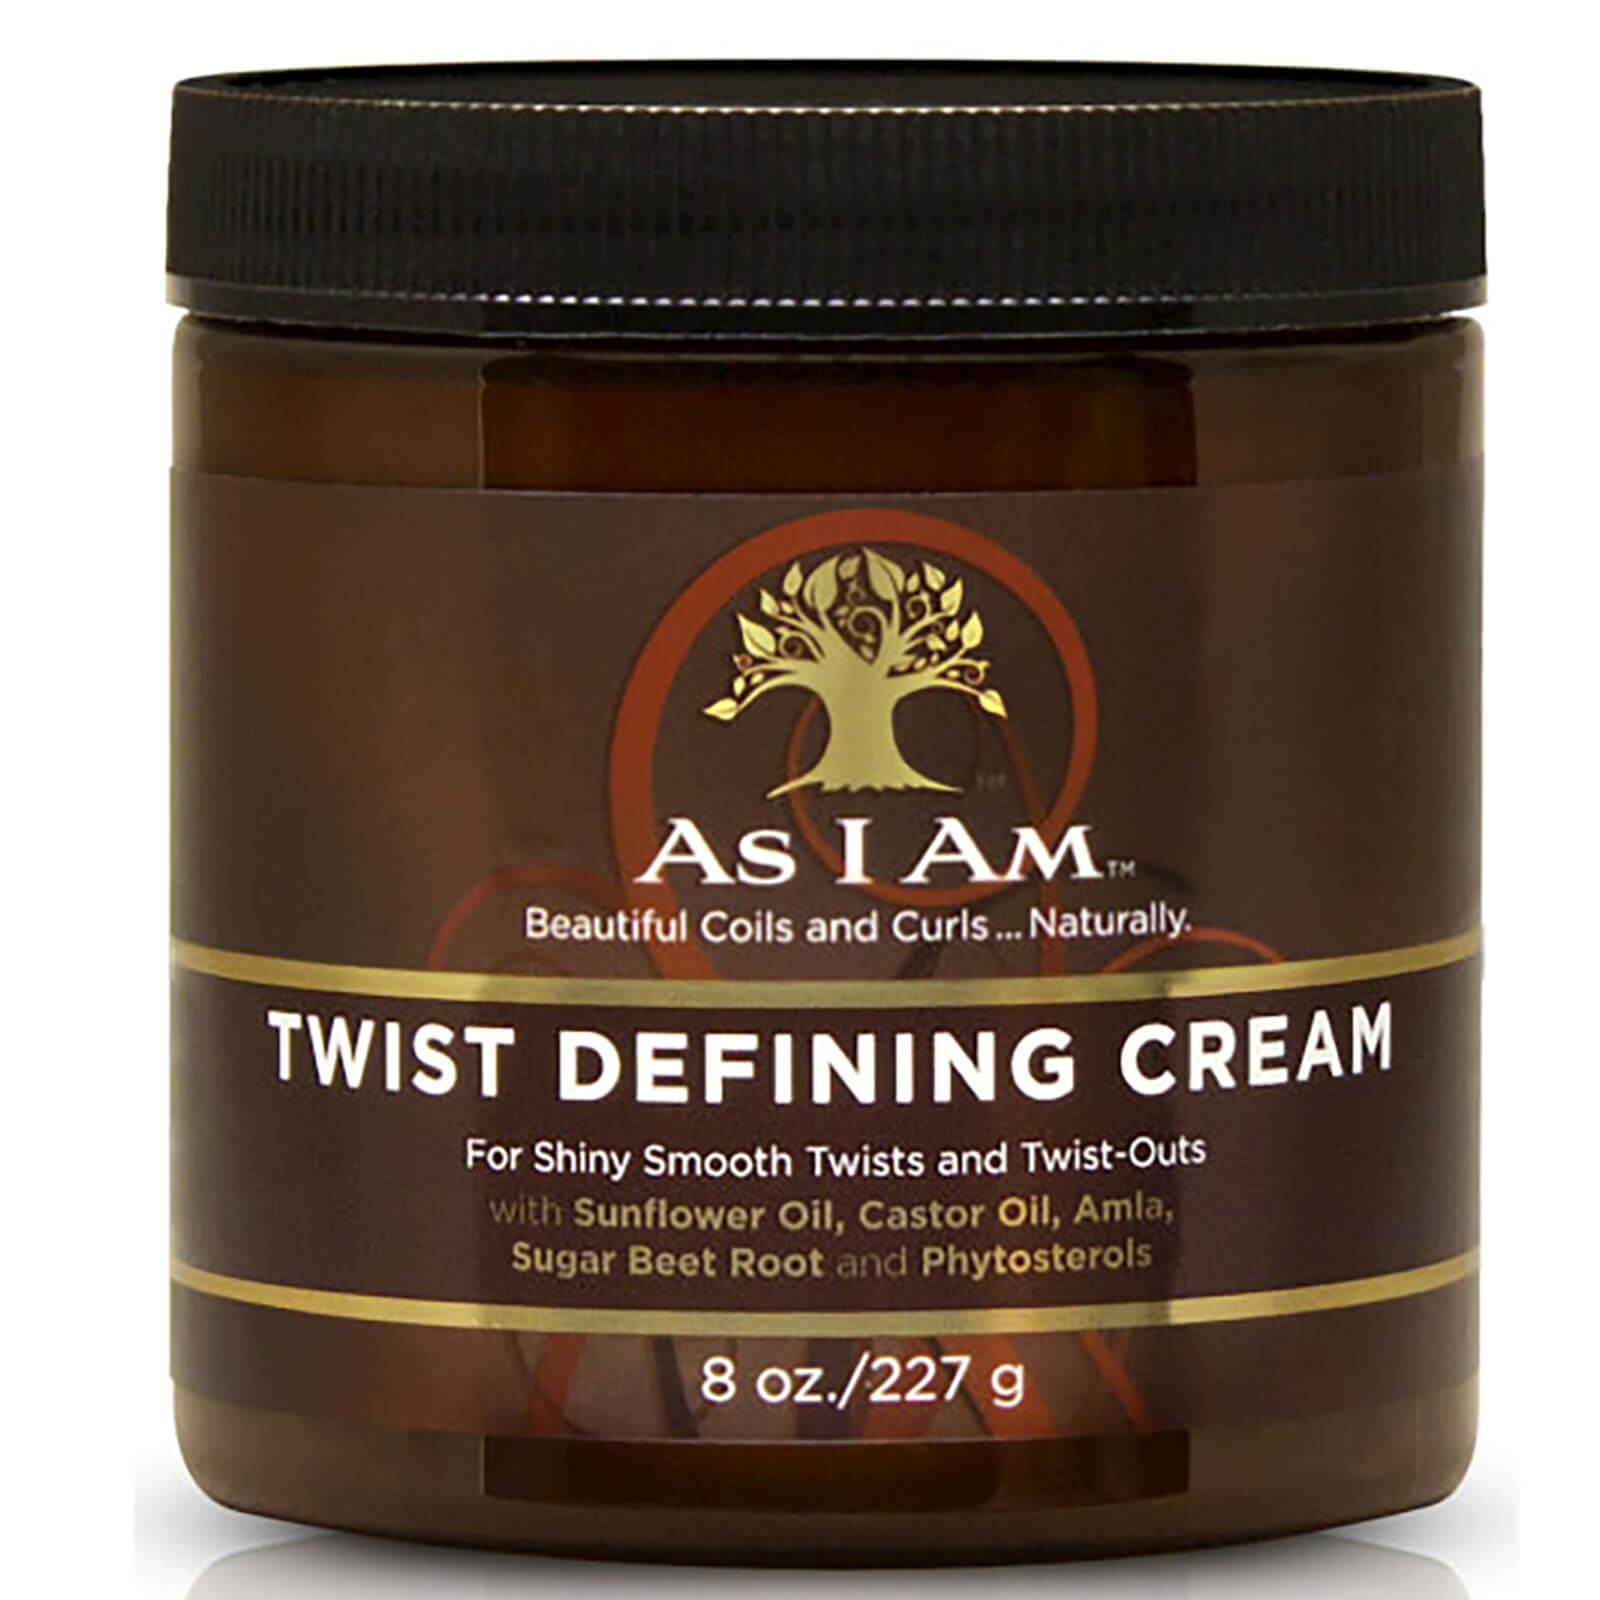 As I Am Twist Defining Cream 227g